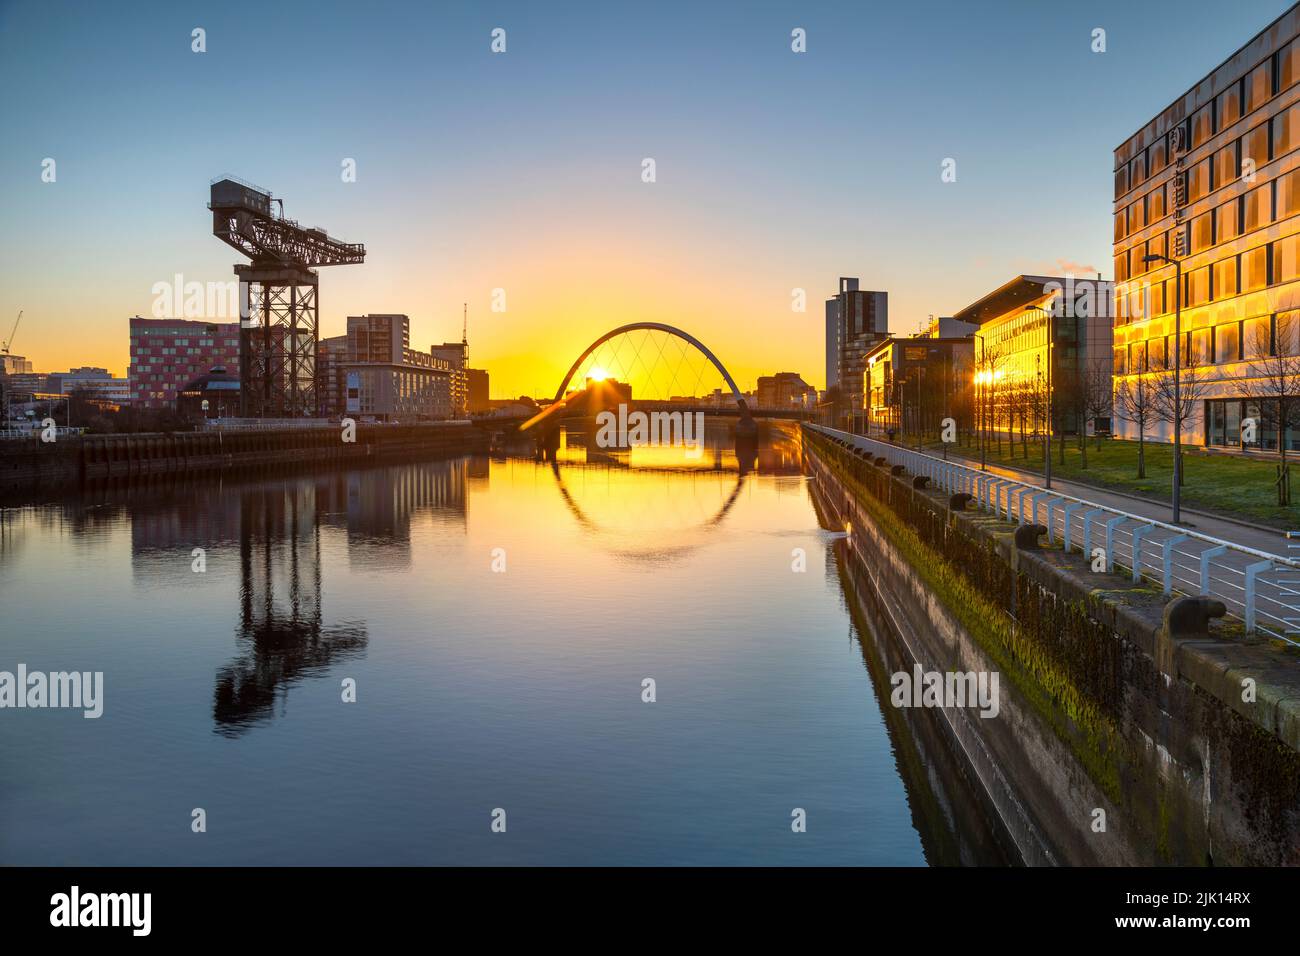 Lever de soleil au-dessus de la rivière Clyde, Clyde Crane, Clyde Arc (Squinty Bridge), River Clyde, Glasgow, Écosse, Royaume-Uni, Europe Banque D'Images